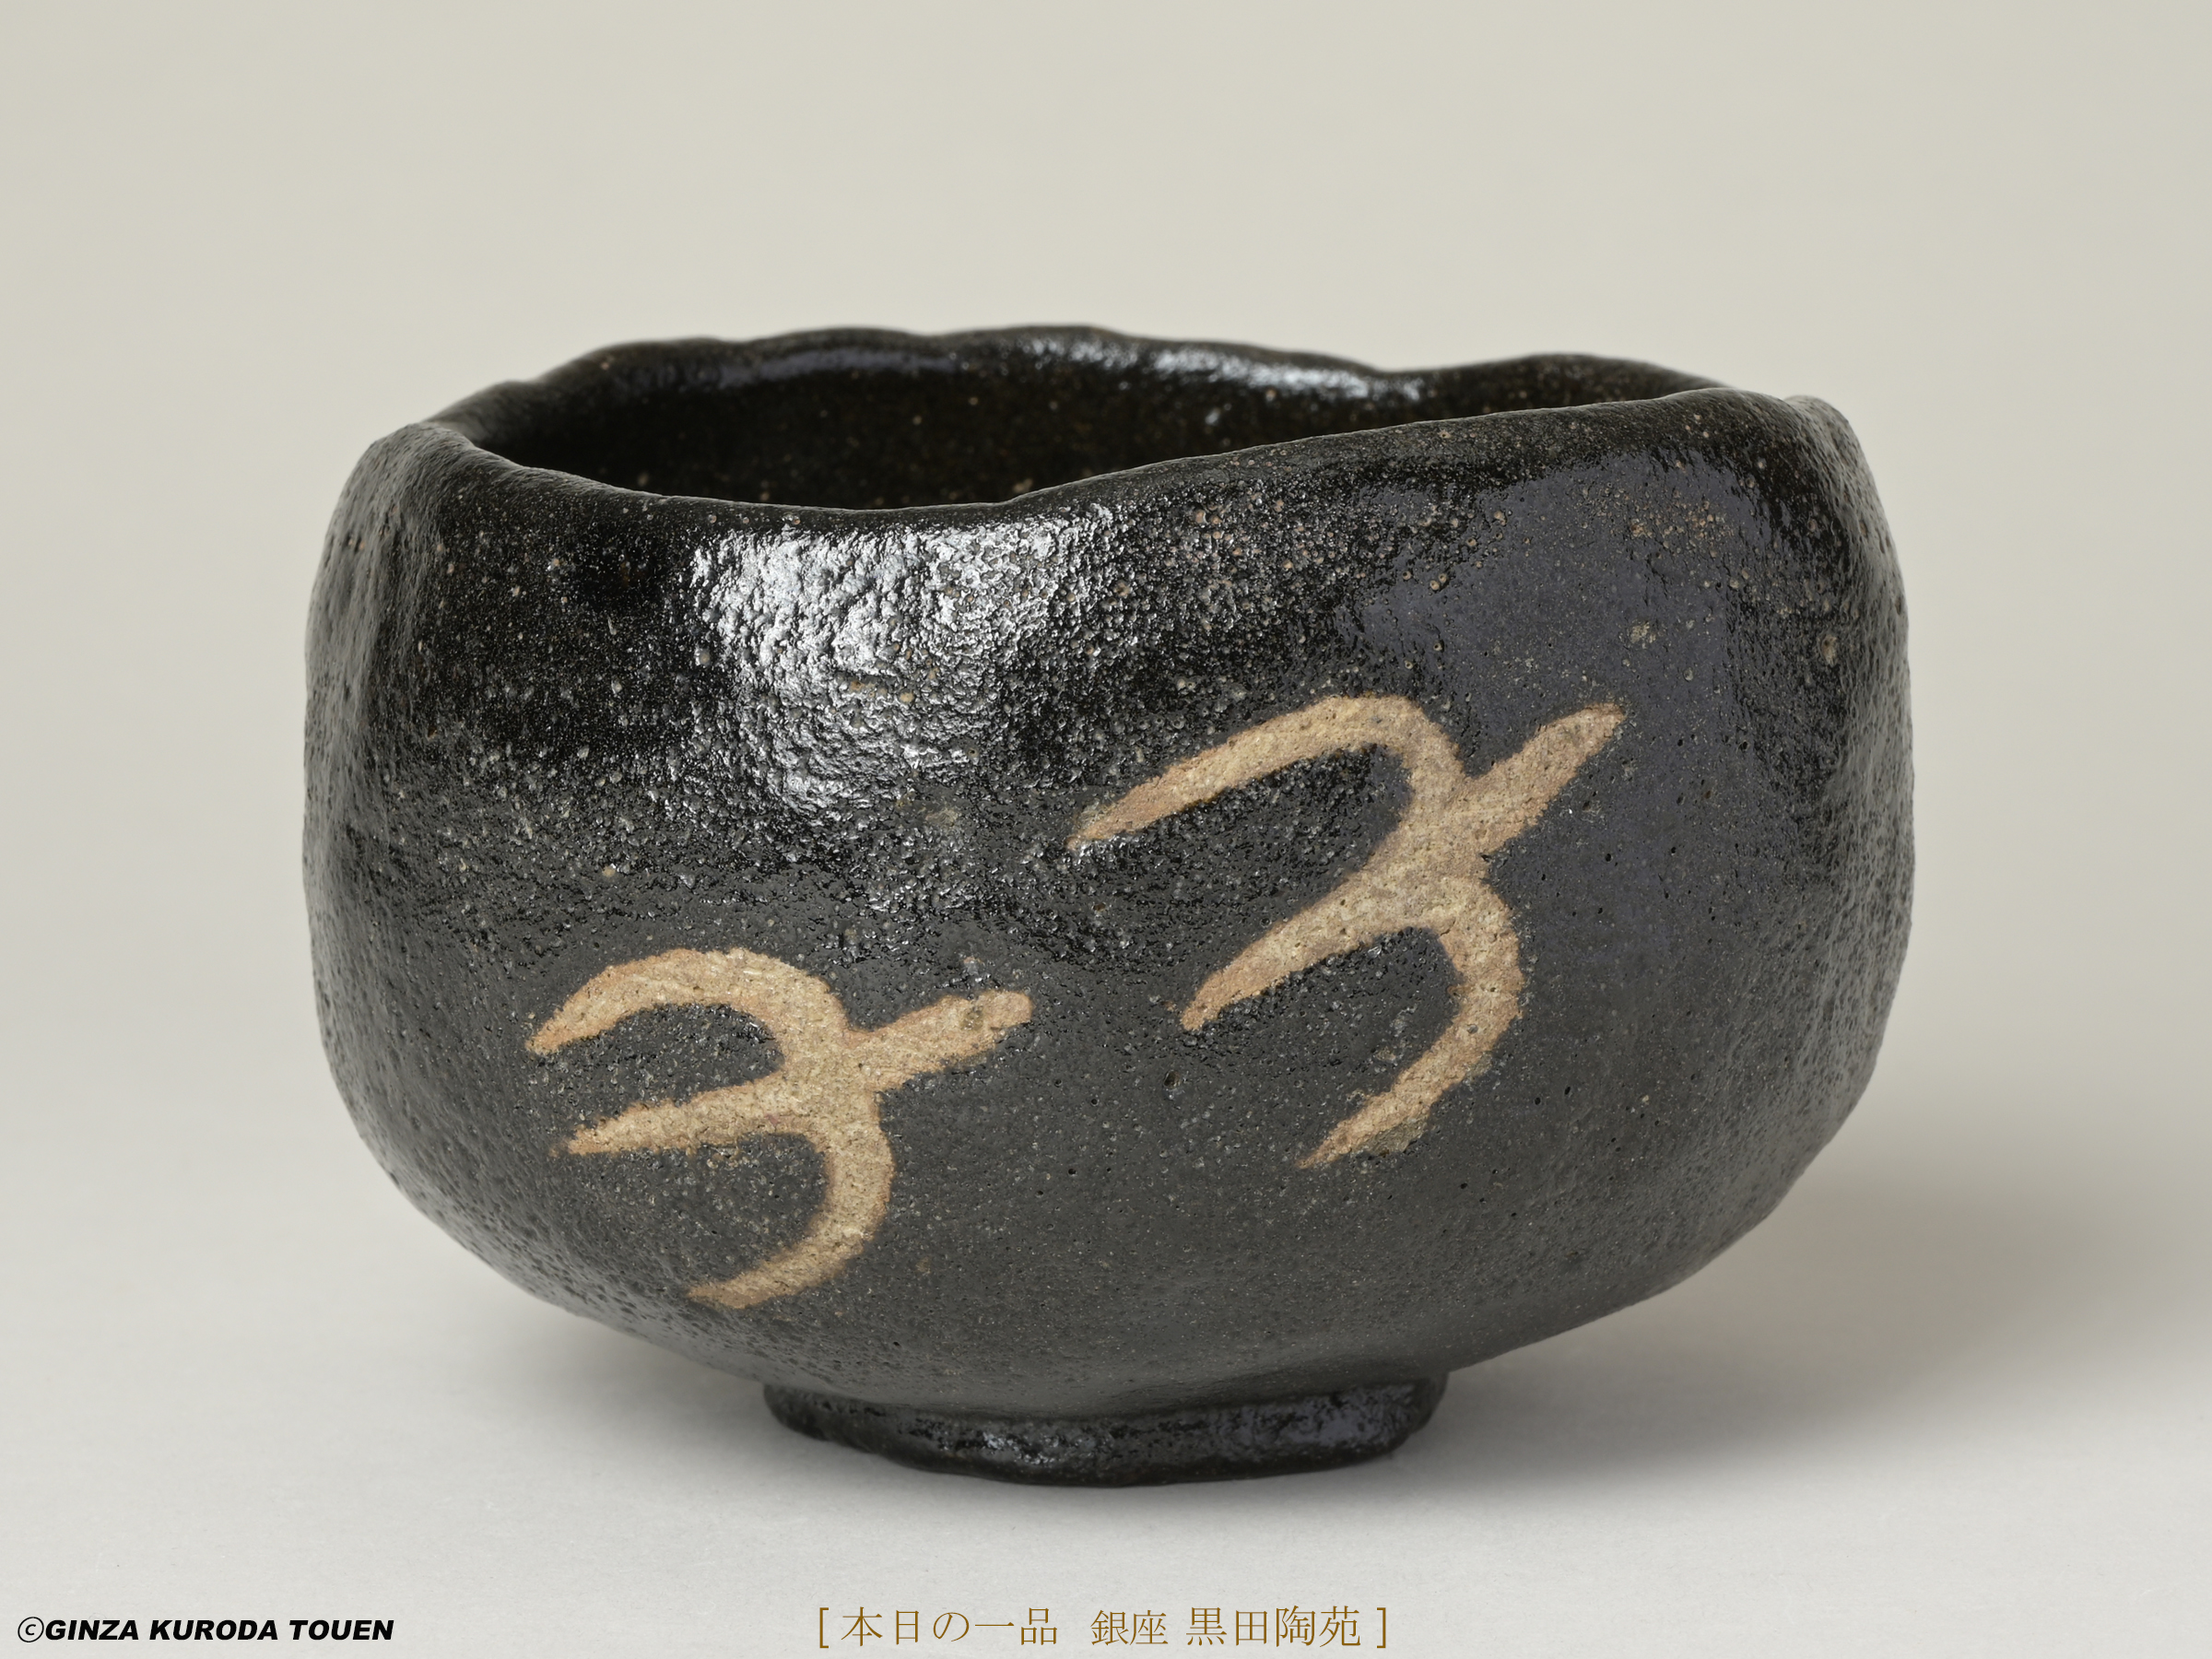 Bernard Leach: Tea bowl, Black raku type